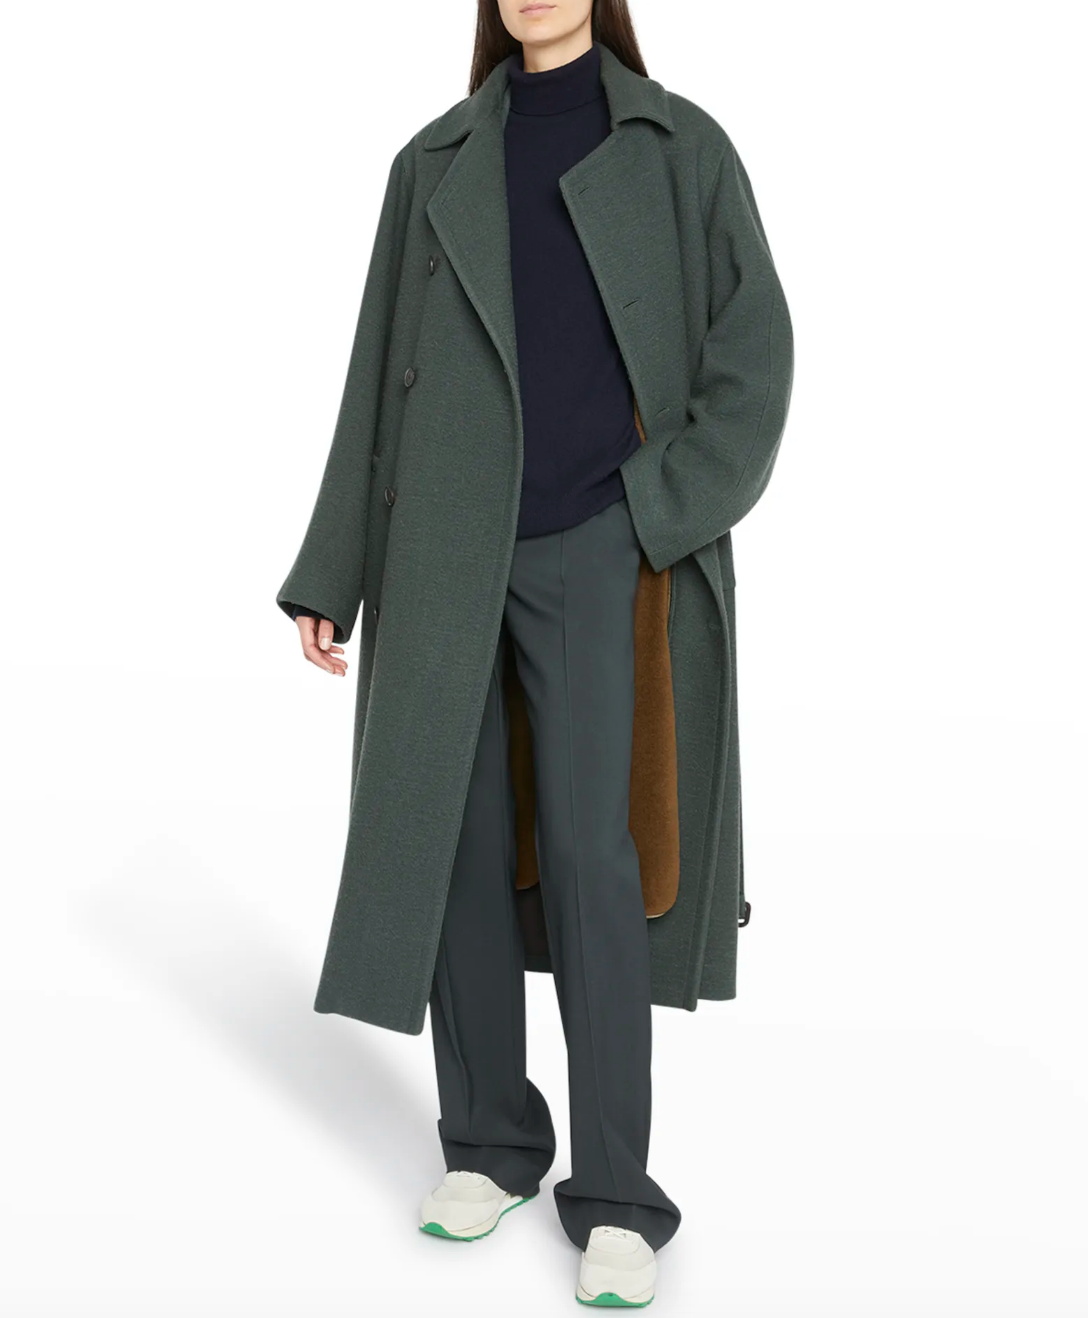 Dorit Kemsley's Green Belted Coat